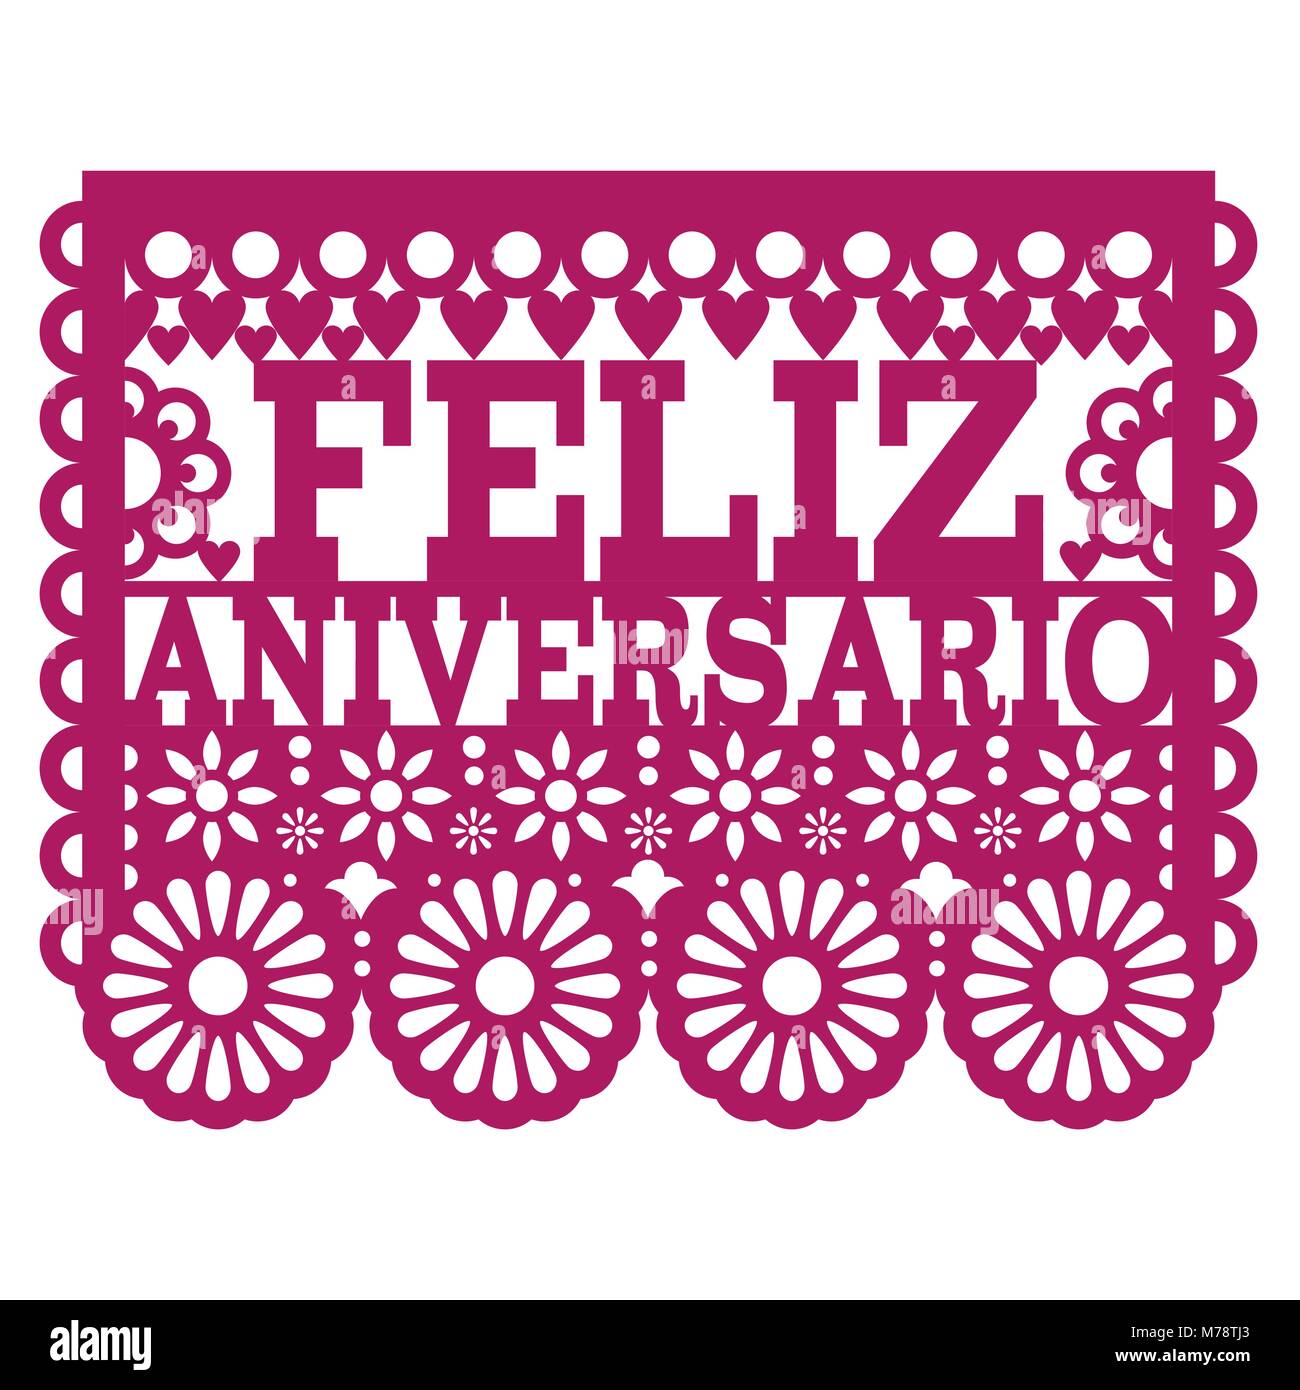 Feliz Aniversario Papel Picado vector design - Happy Anniversary greeting card, Mexican folk art paper banner Stock Vector